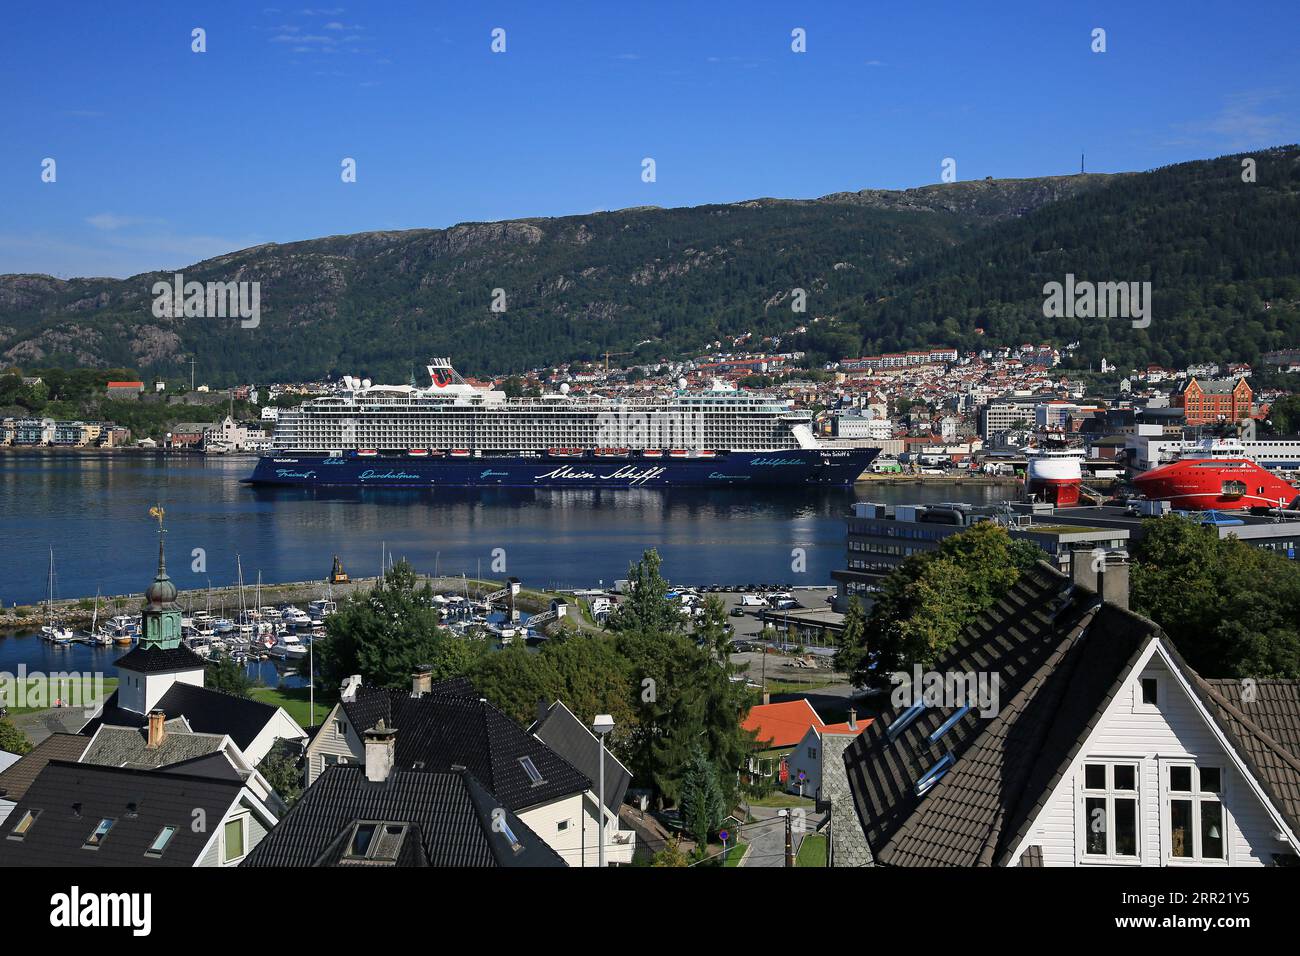 Paquebot de croisière Mein Schiff 6, en visite à Bergen, Norvège Banque D'Images